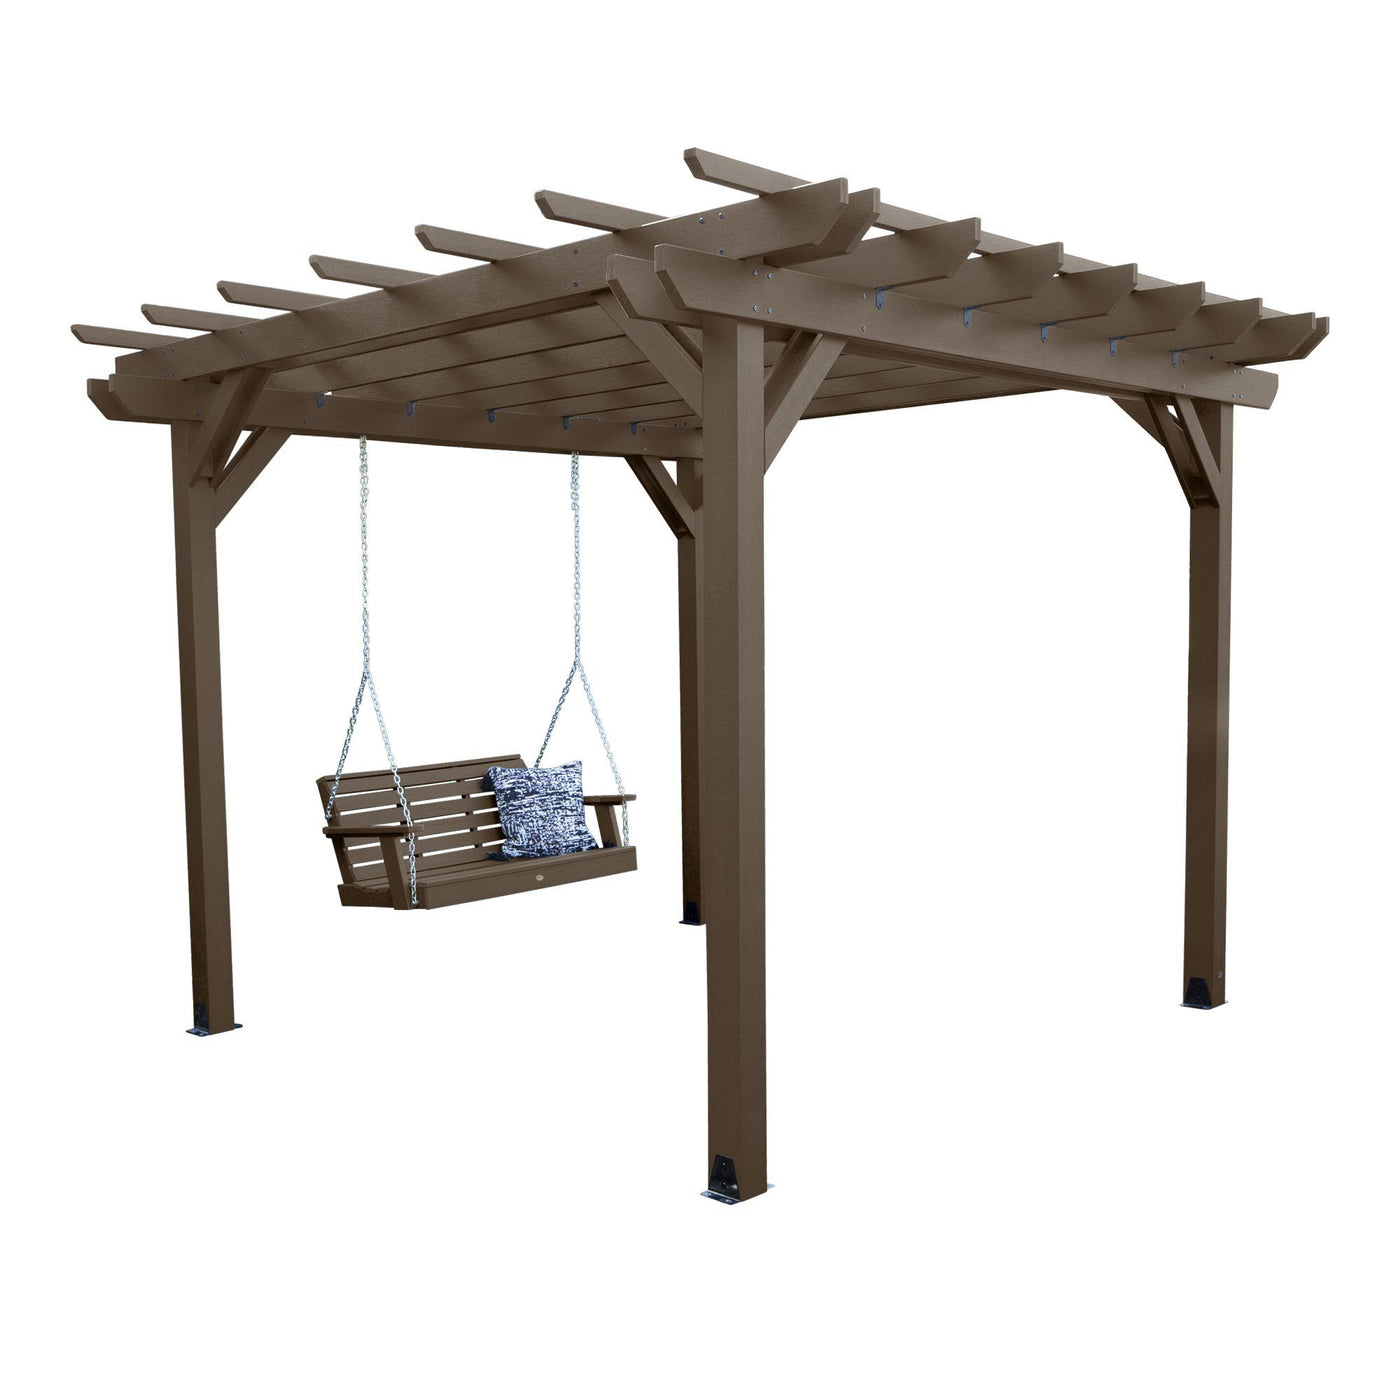 Bodhi 10’ x 10’ DIY Pergola with 4’ Weatherly Porch Swing Highwood USA Weathered Acorn 